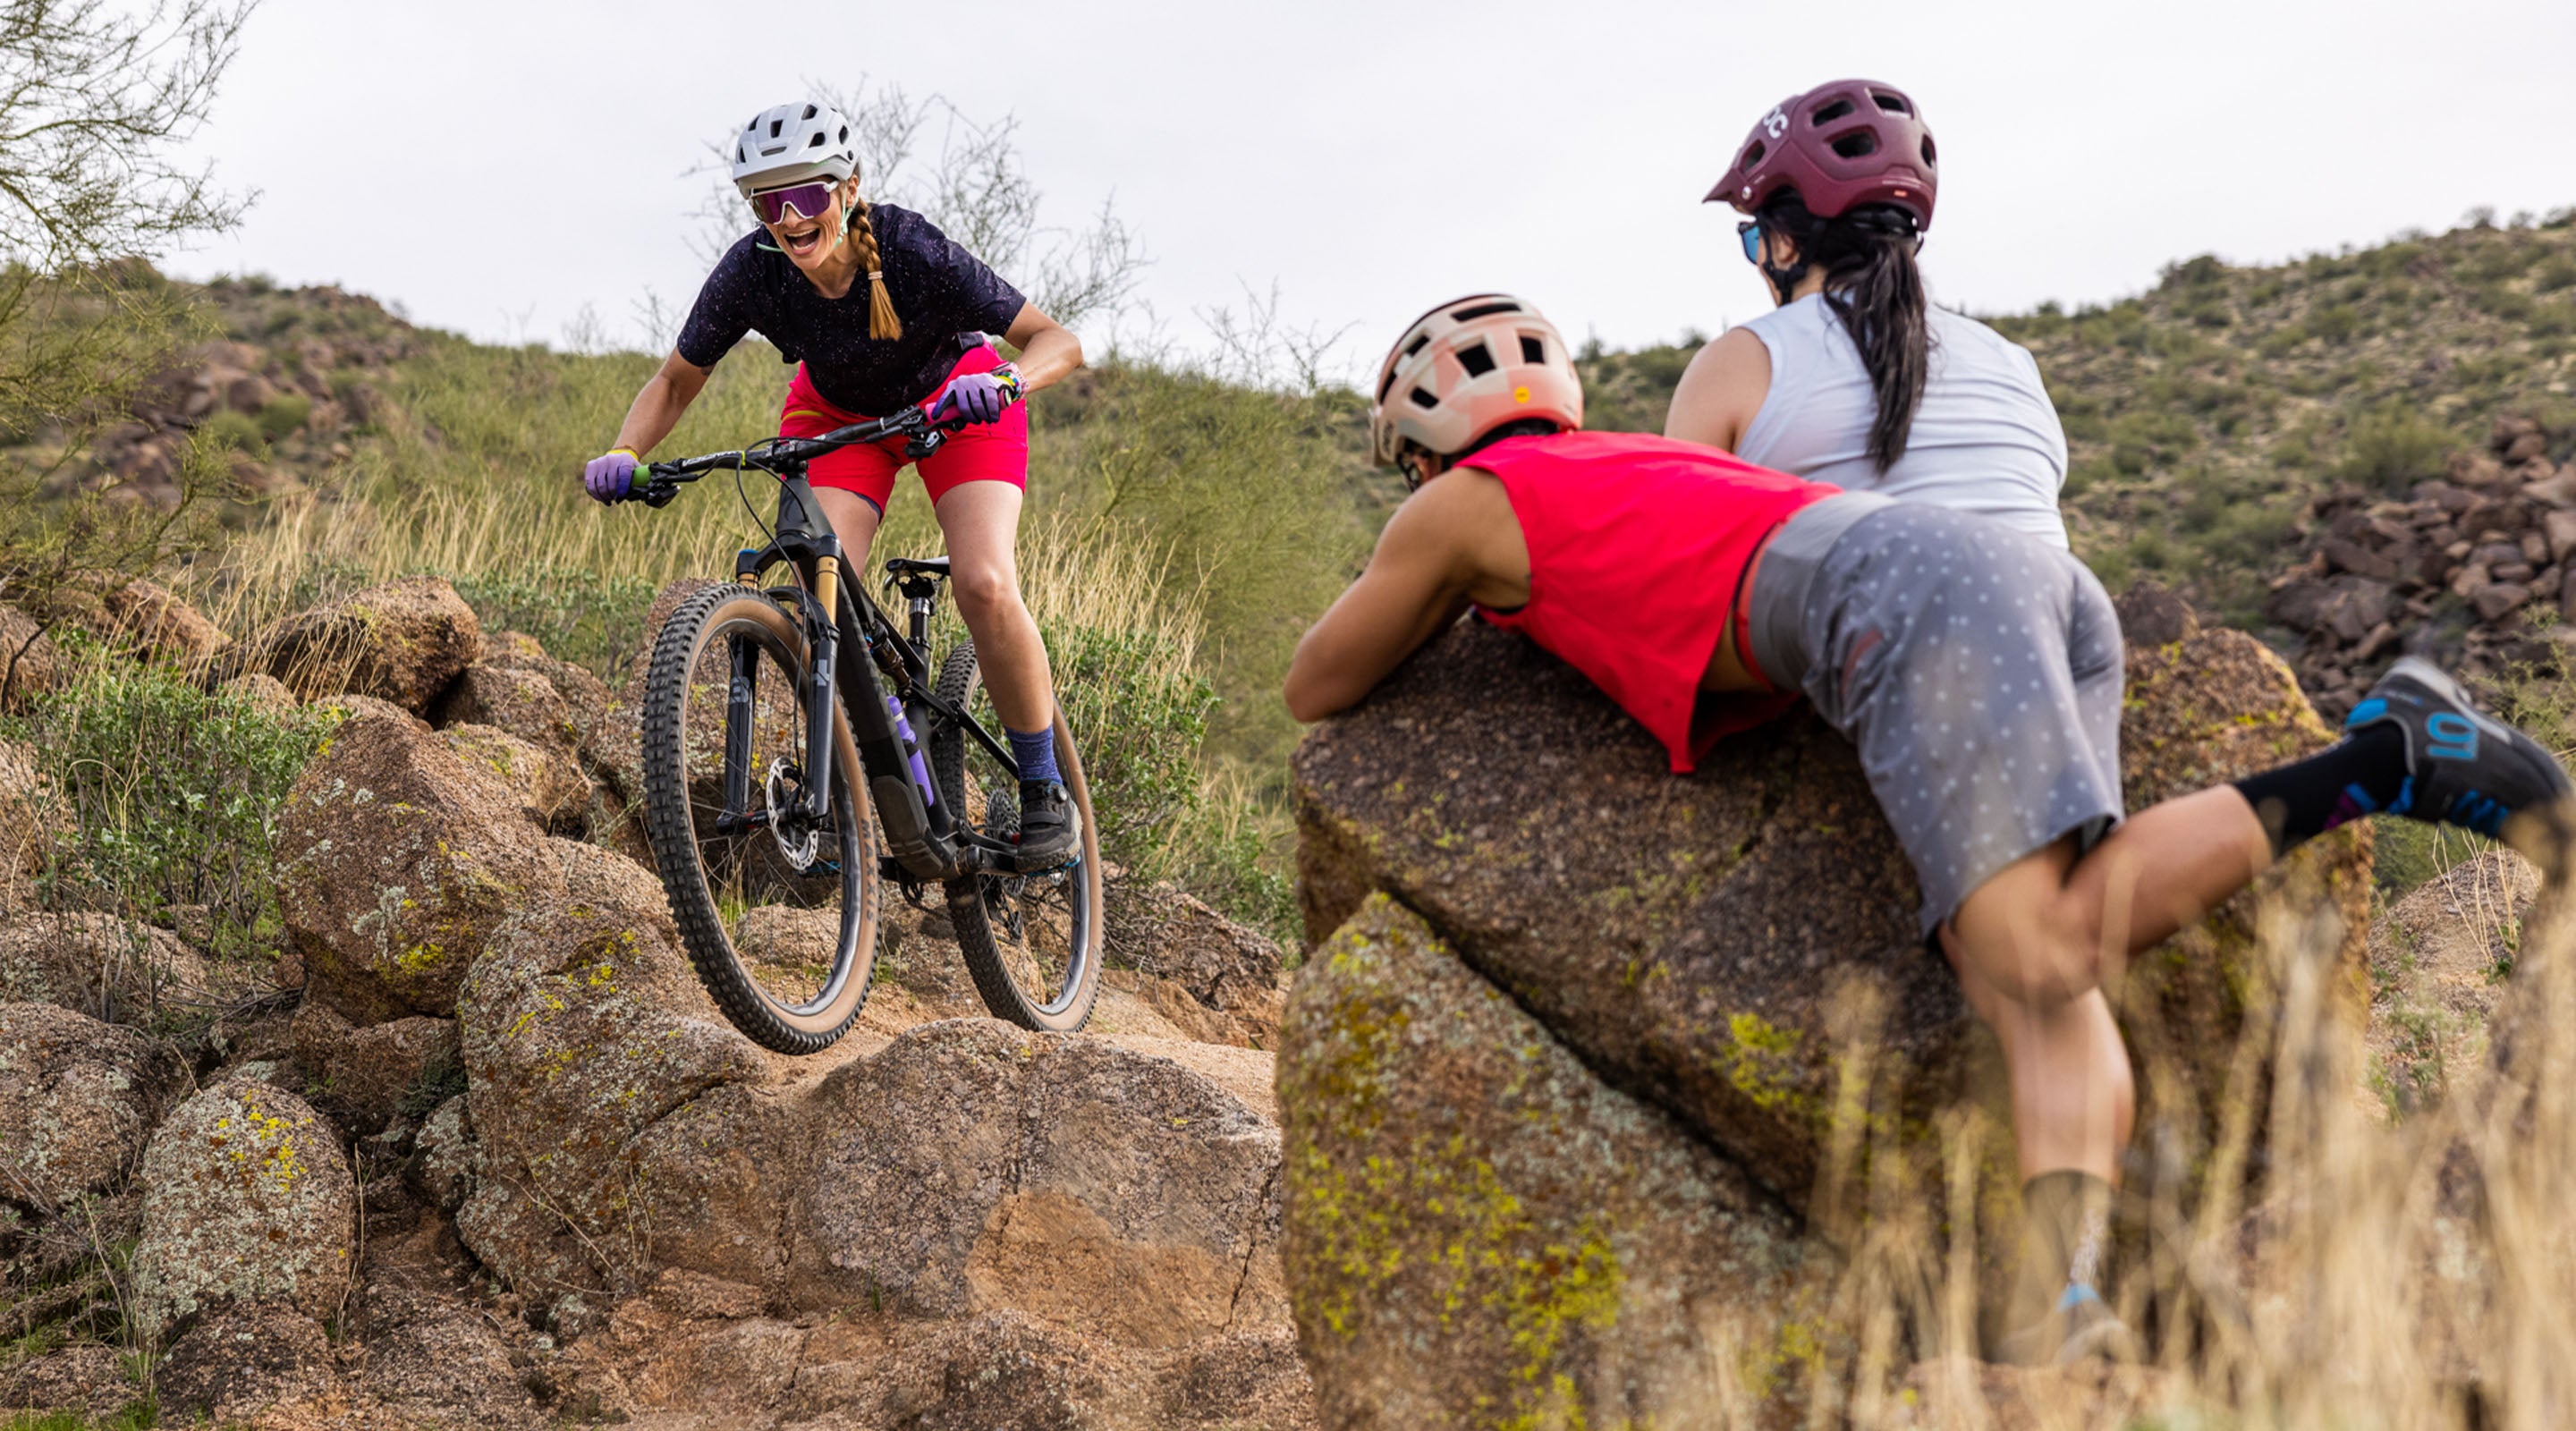 Two women watching another mountain biker ride a rock drop